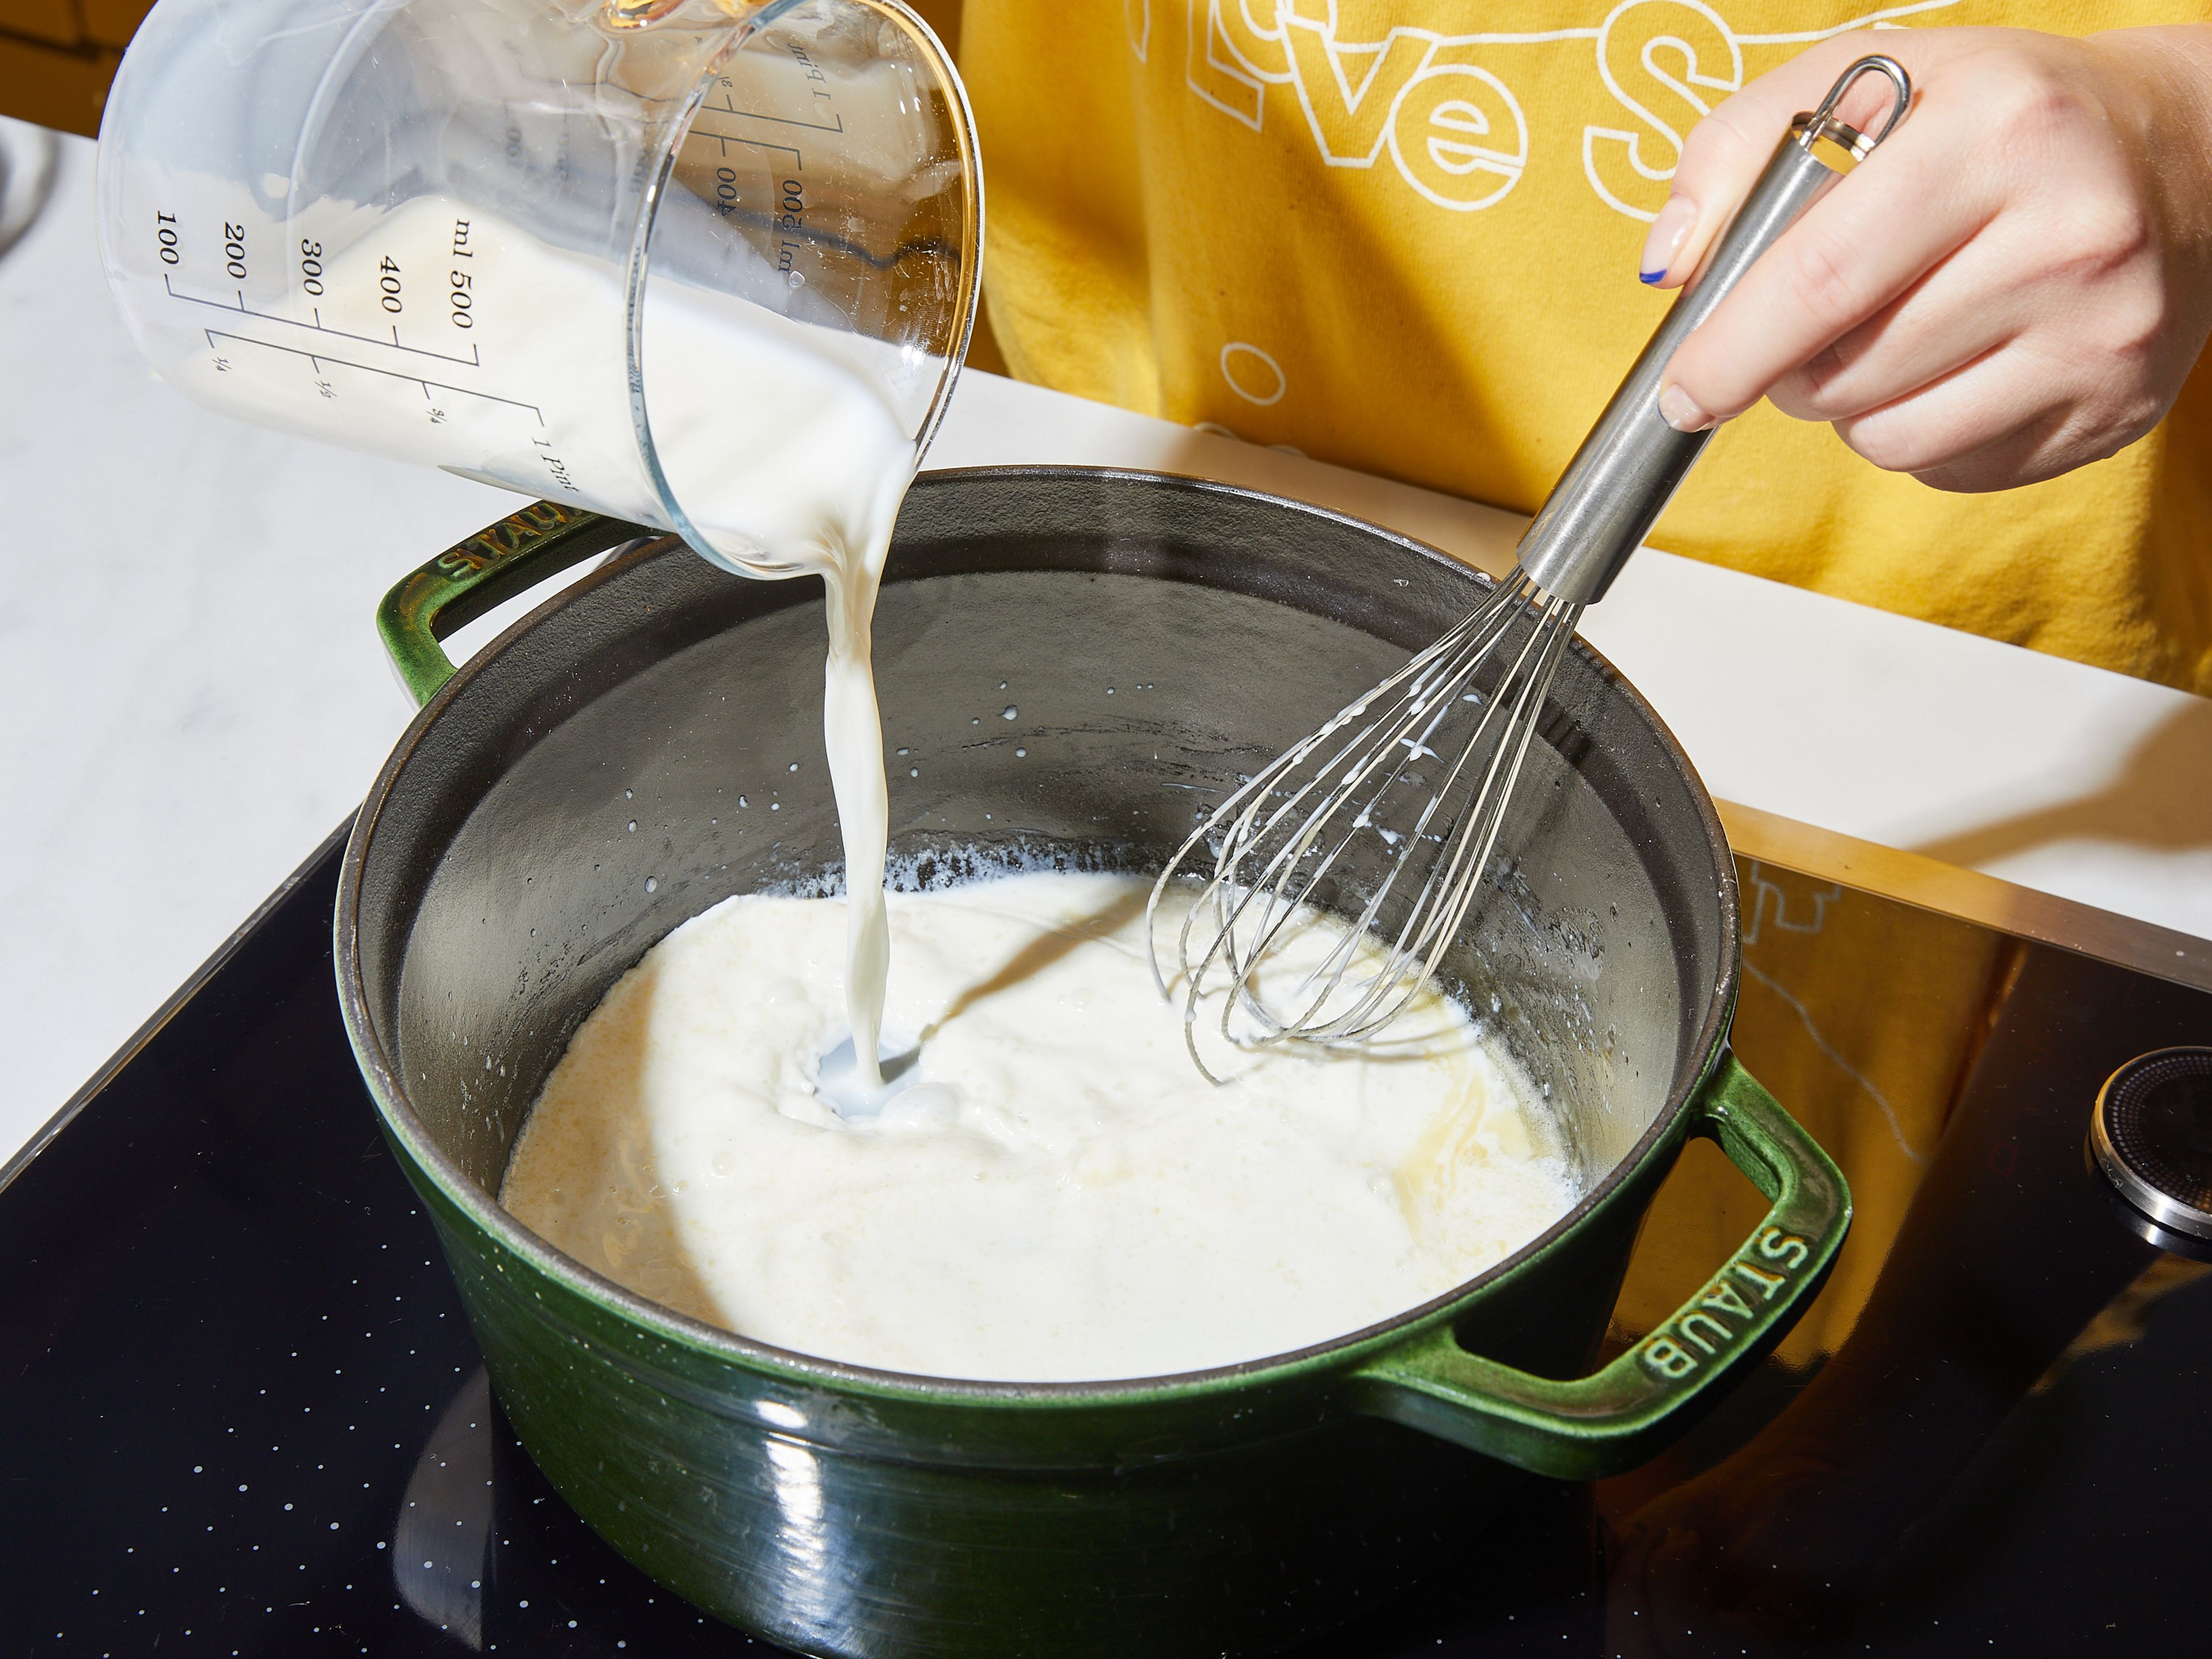 Cheddar-Käse mit einer Küchenmaschine oder einer Küchenreibe zerkleinern und beiseite stellen. Butter in einem großen Topf bei mittlerer Hitze schmelzen. Mehl einrühren und kochen lassen, bis die Mischung eingedickt ist und eine leicht goldene Farbe annimmt, ca. 2 Min. Dann einen Teil der Milch einrühren. Sobald die Masse eingedickt ist, die restliche Milch und das Wasser hinzufügen und zum Köcheln bringen.